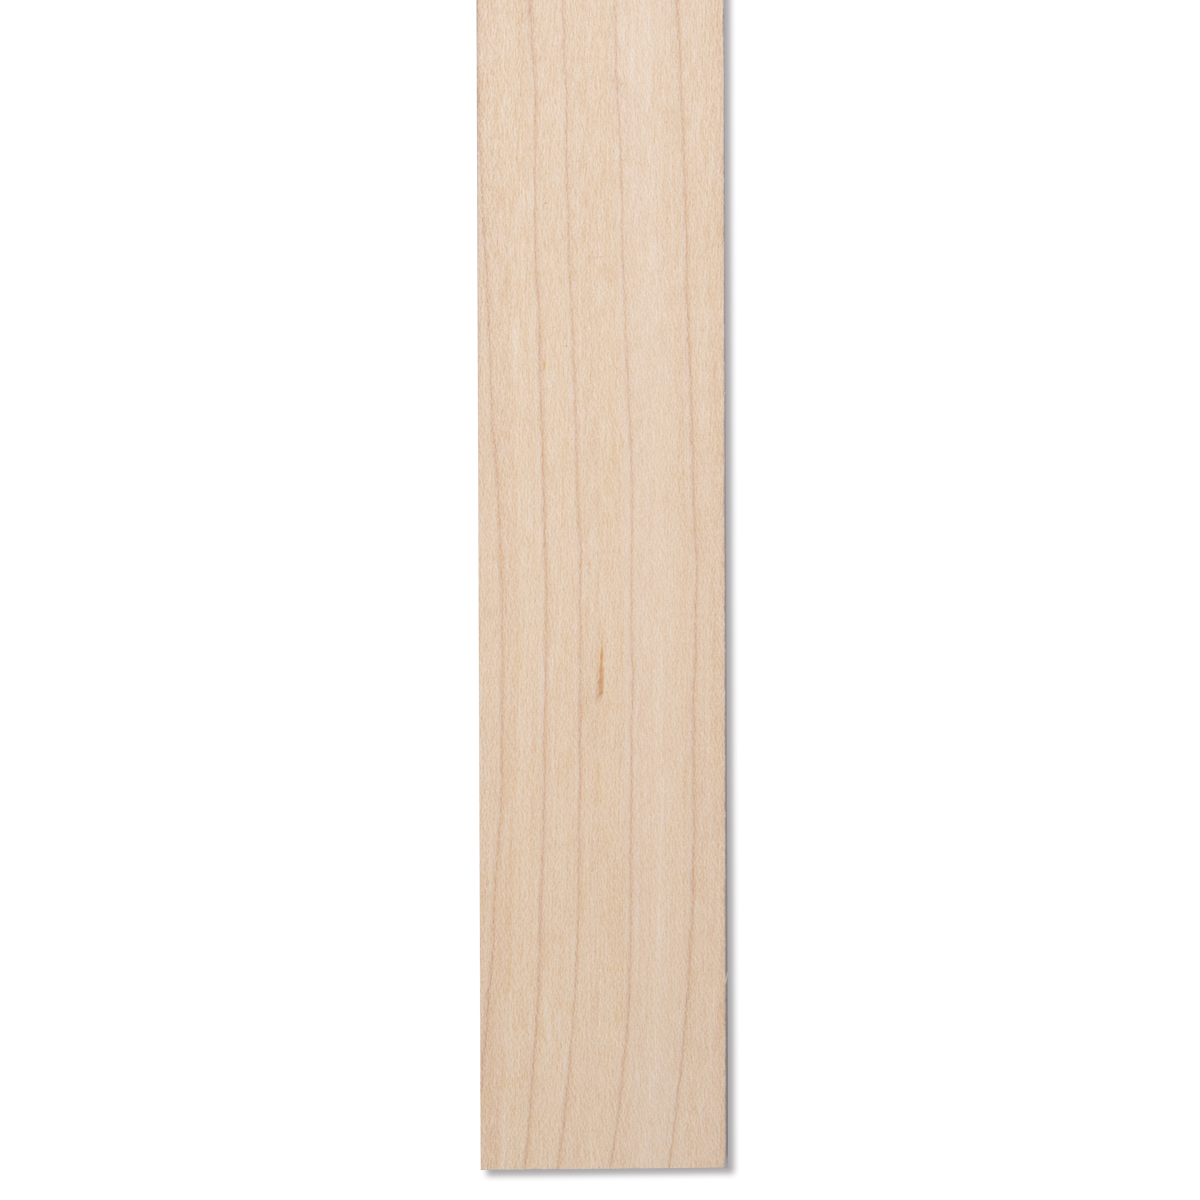 メープル 木簡 約300×30×5mm 10本組 木材 DIY 手作り 素材 木工 木 板 材料 セット メープル材 かえで 楓 木材 